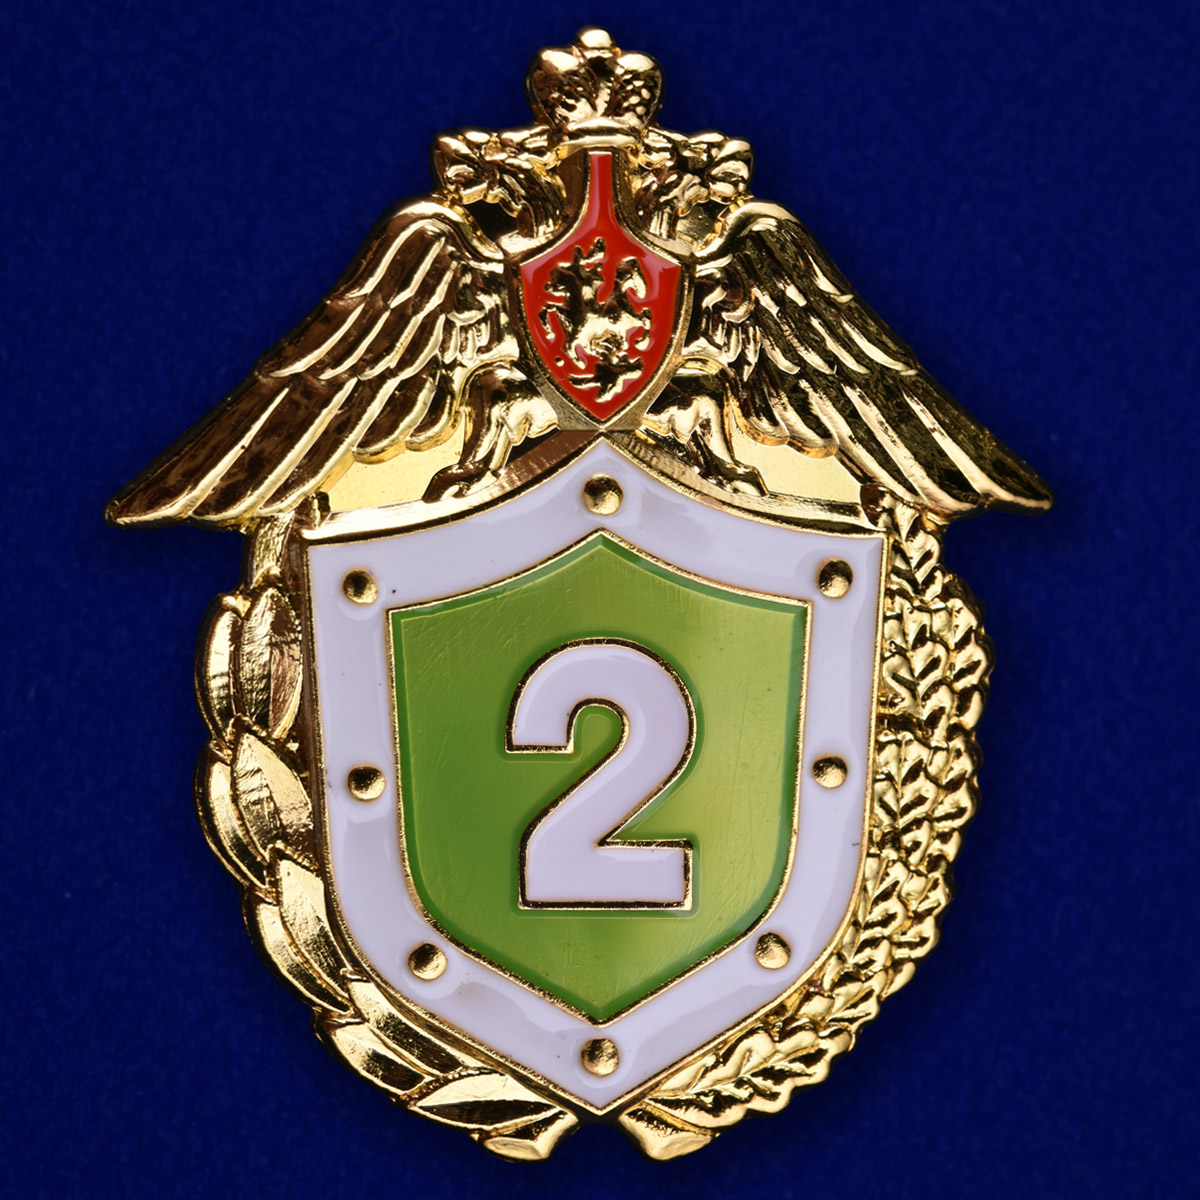 Знак «Классный специалист» 2 класс ФПС России